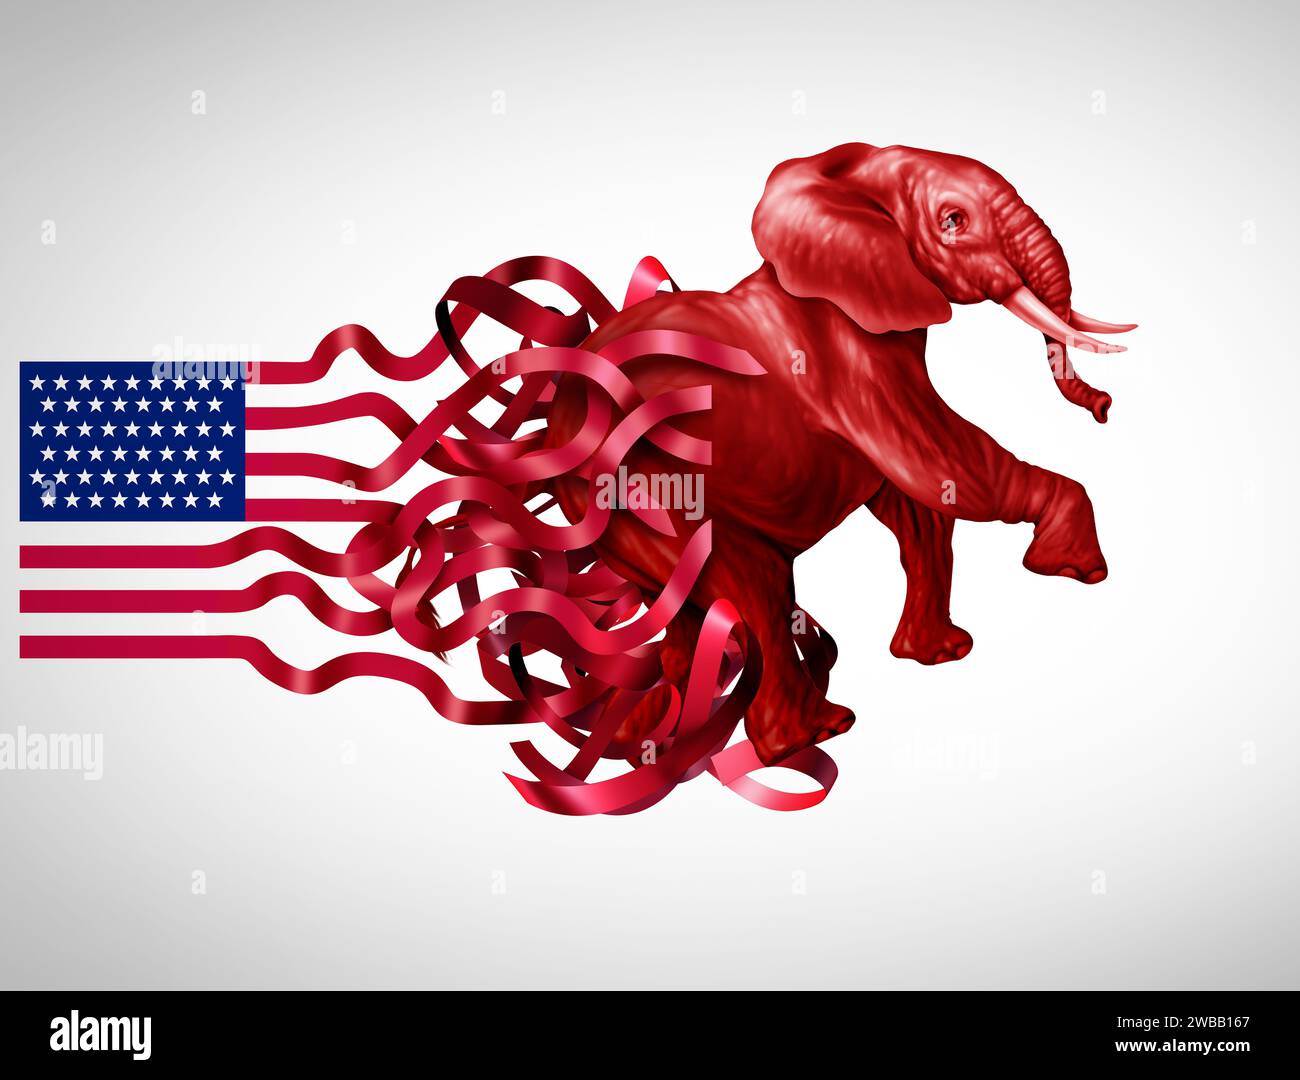 Crisi conservatrice degli Stati Uniti e lotta politica di destra o concetto di ideologia tradizionale come elefante rosso nella sfida politica americana Foto Stock